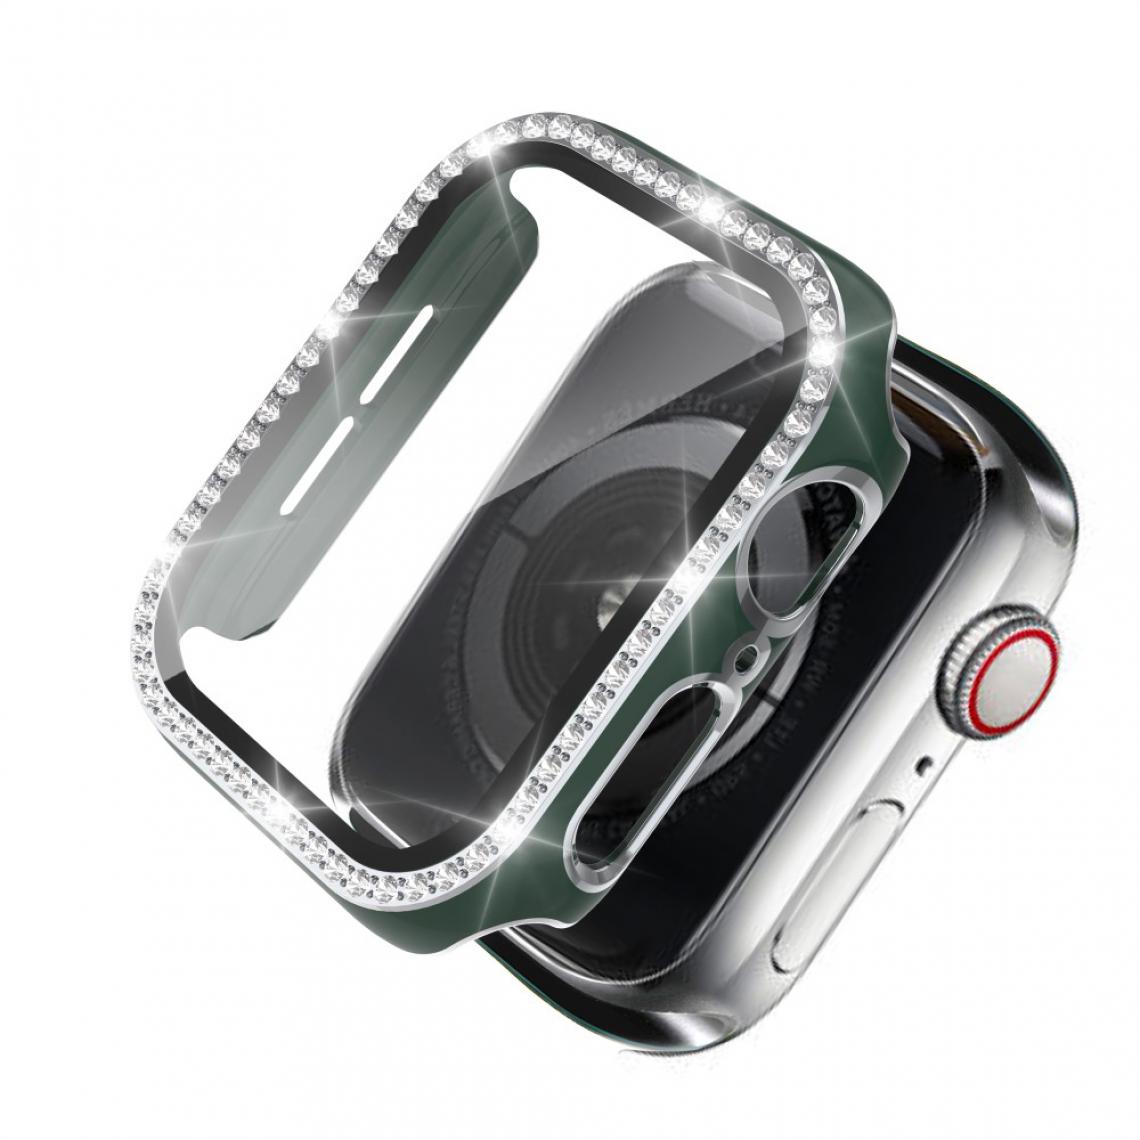 Other - Coque en TPU Cristal de galvanoplastie bicolore vert/argent pour votre Apple Watch 1/2/3 38mm - Accessoires bracelet connecté